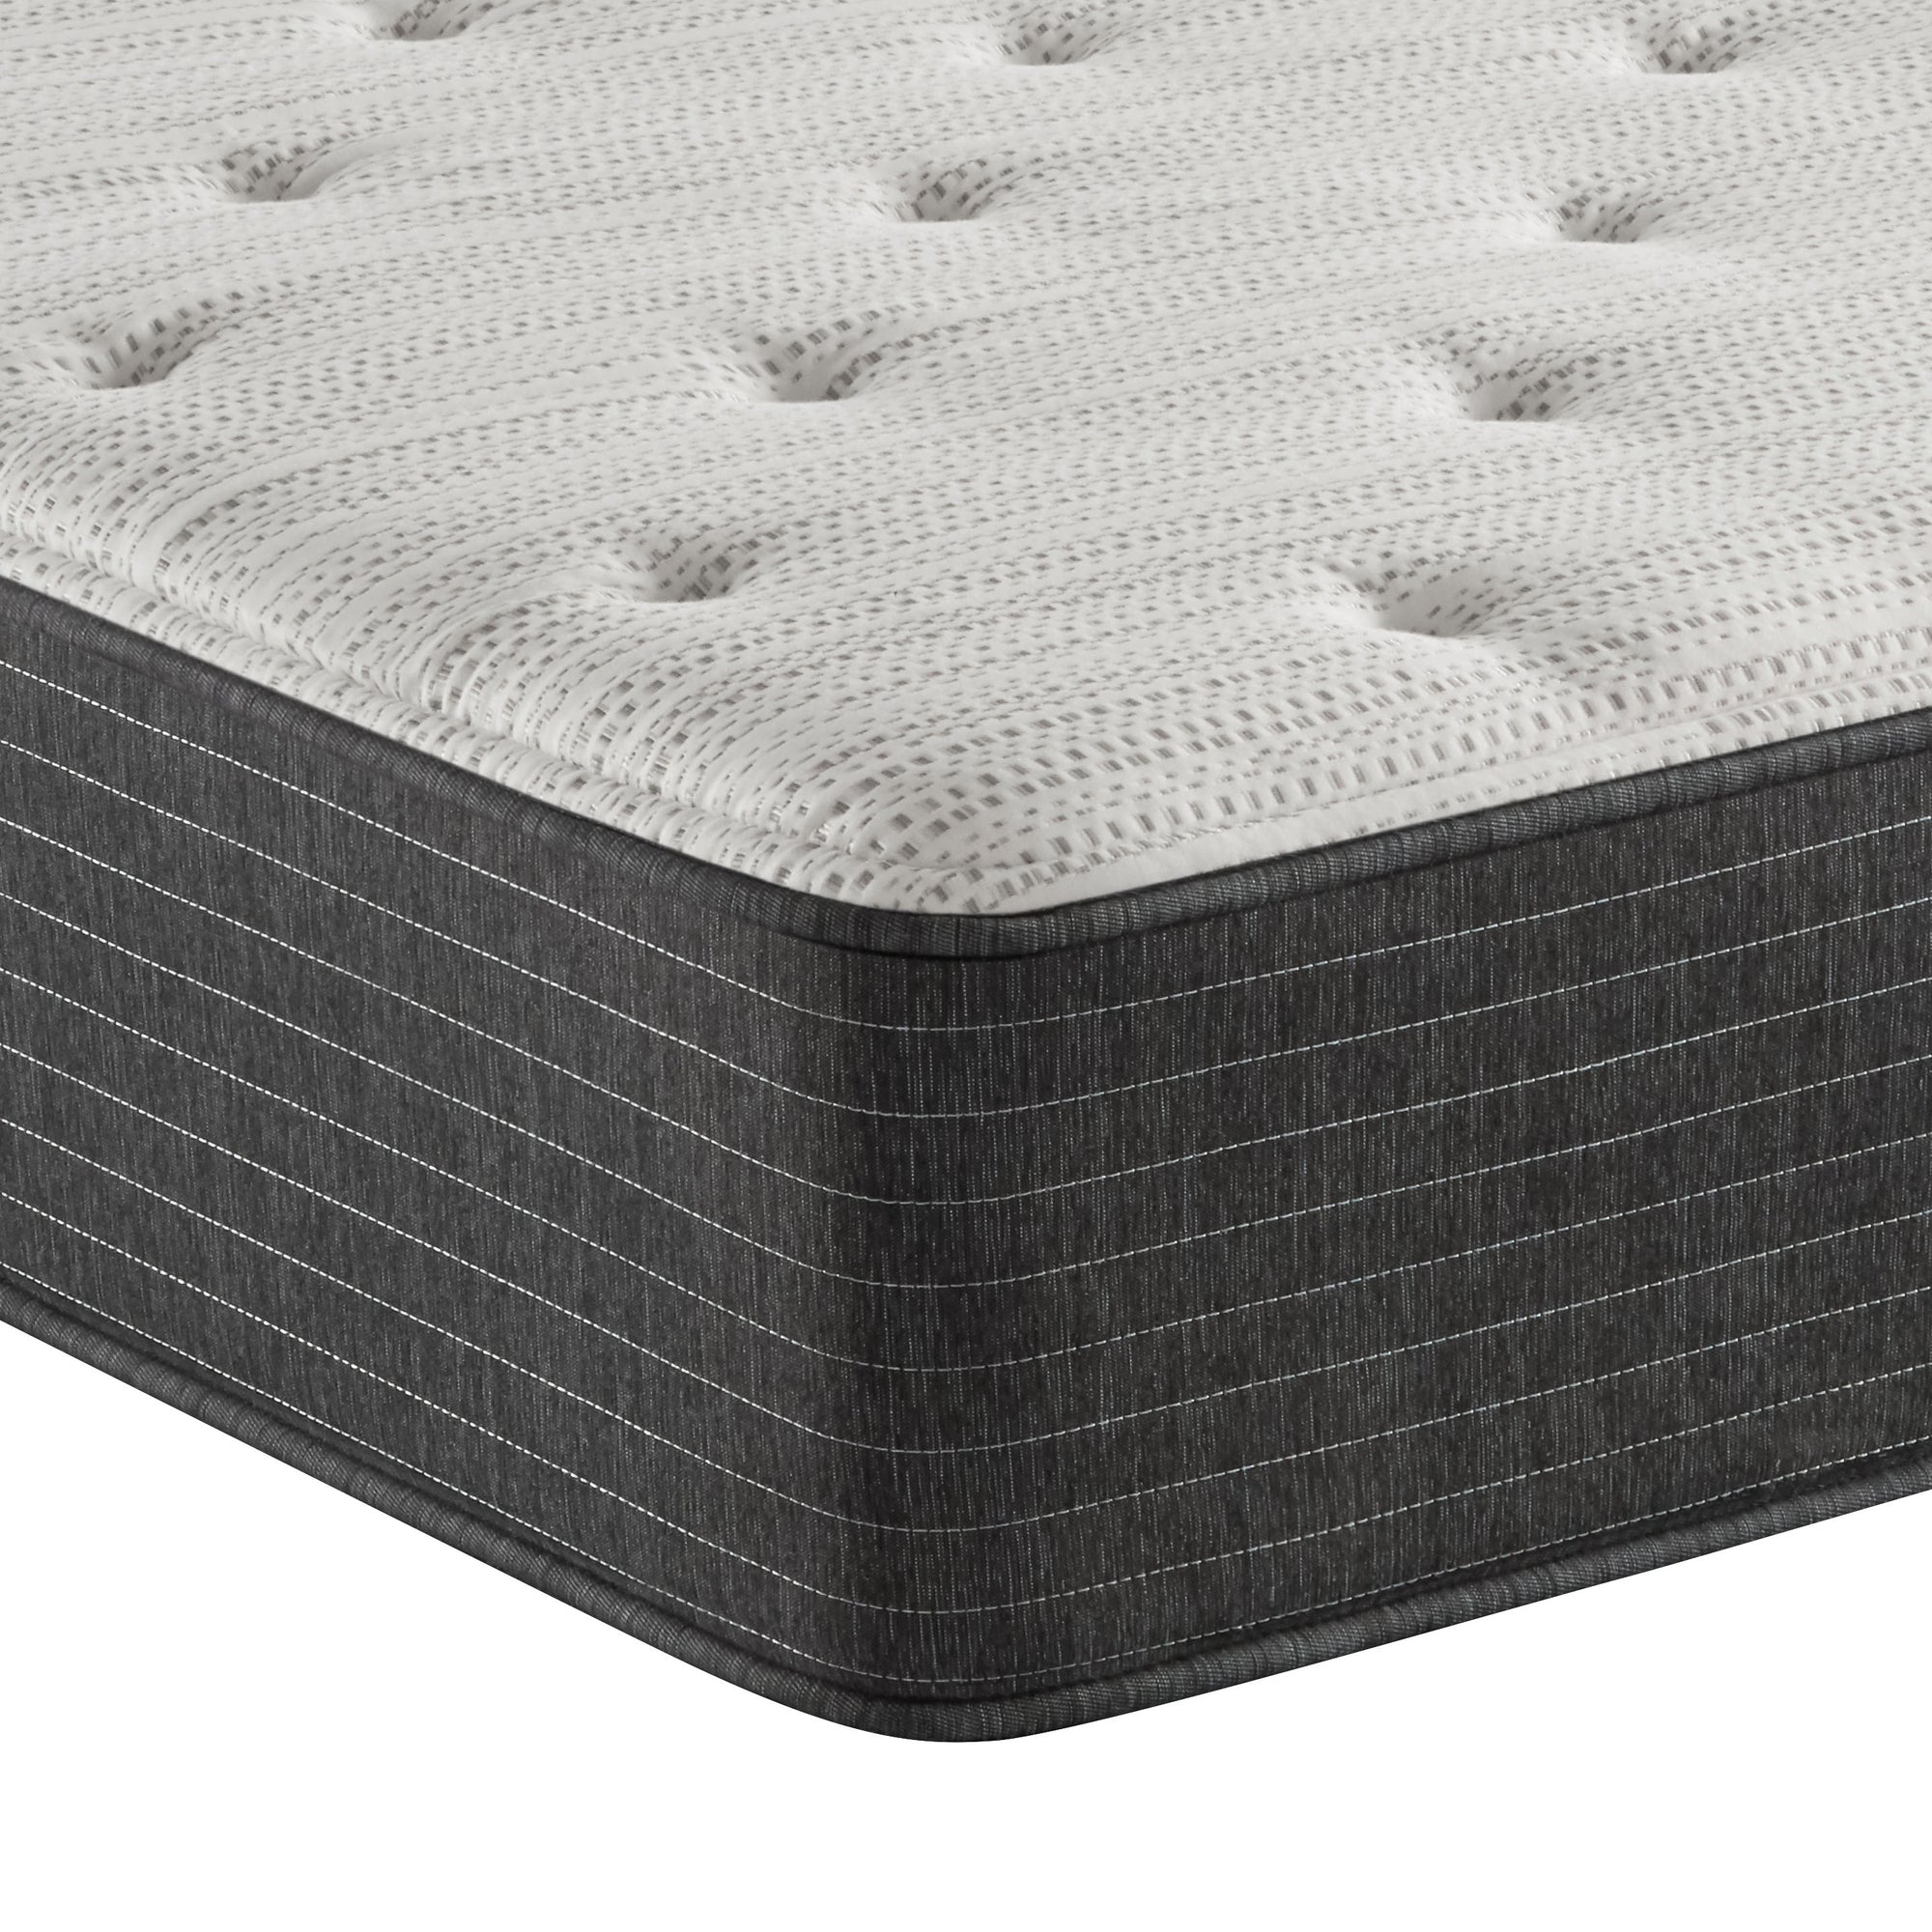 Corner view of the Beautyrest Silver BRS900 Medium mattress